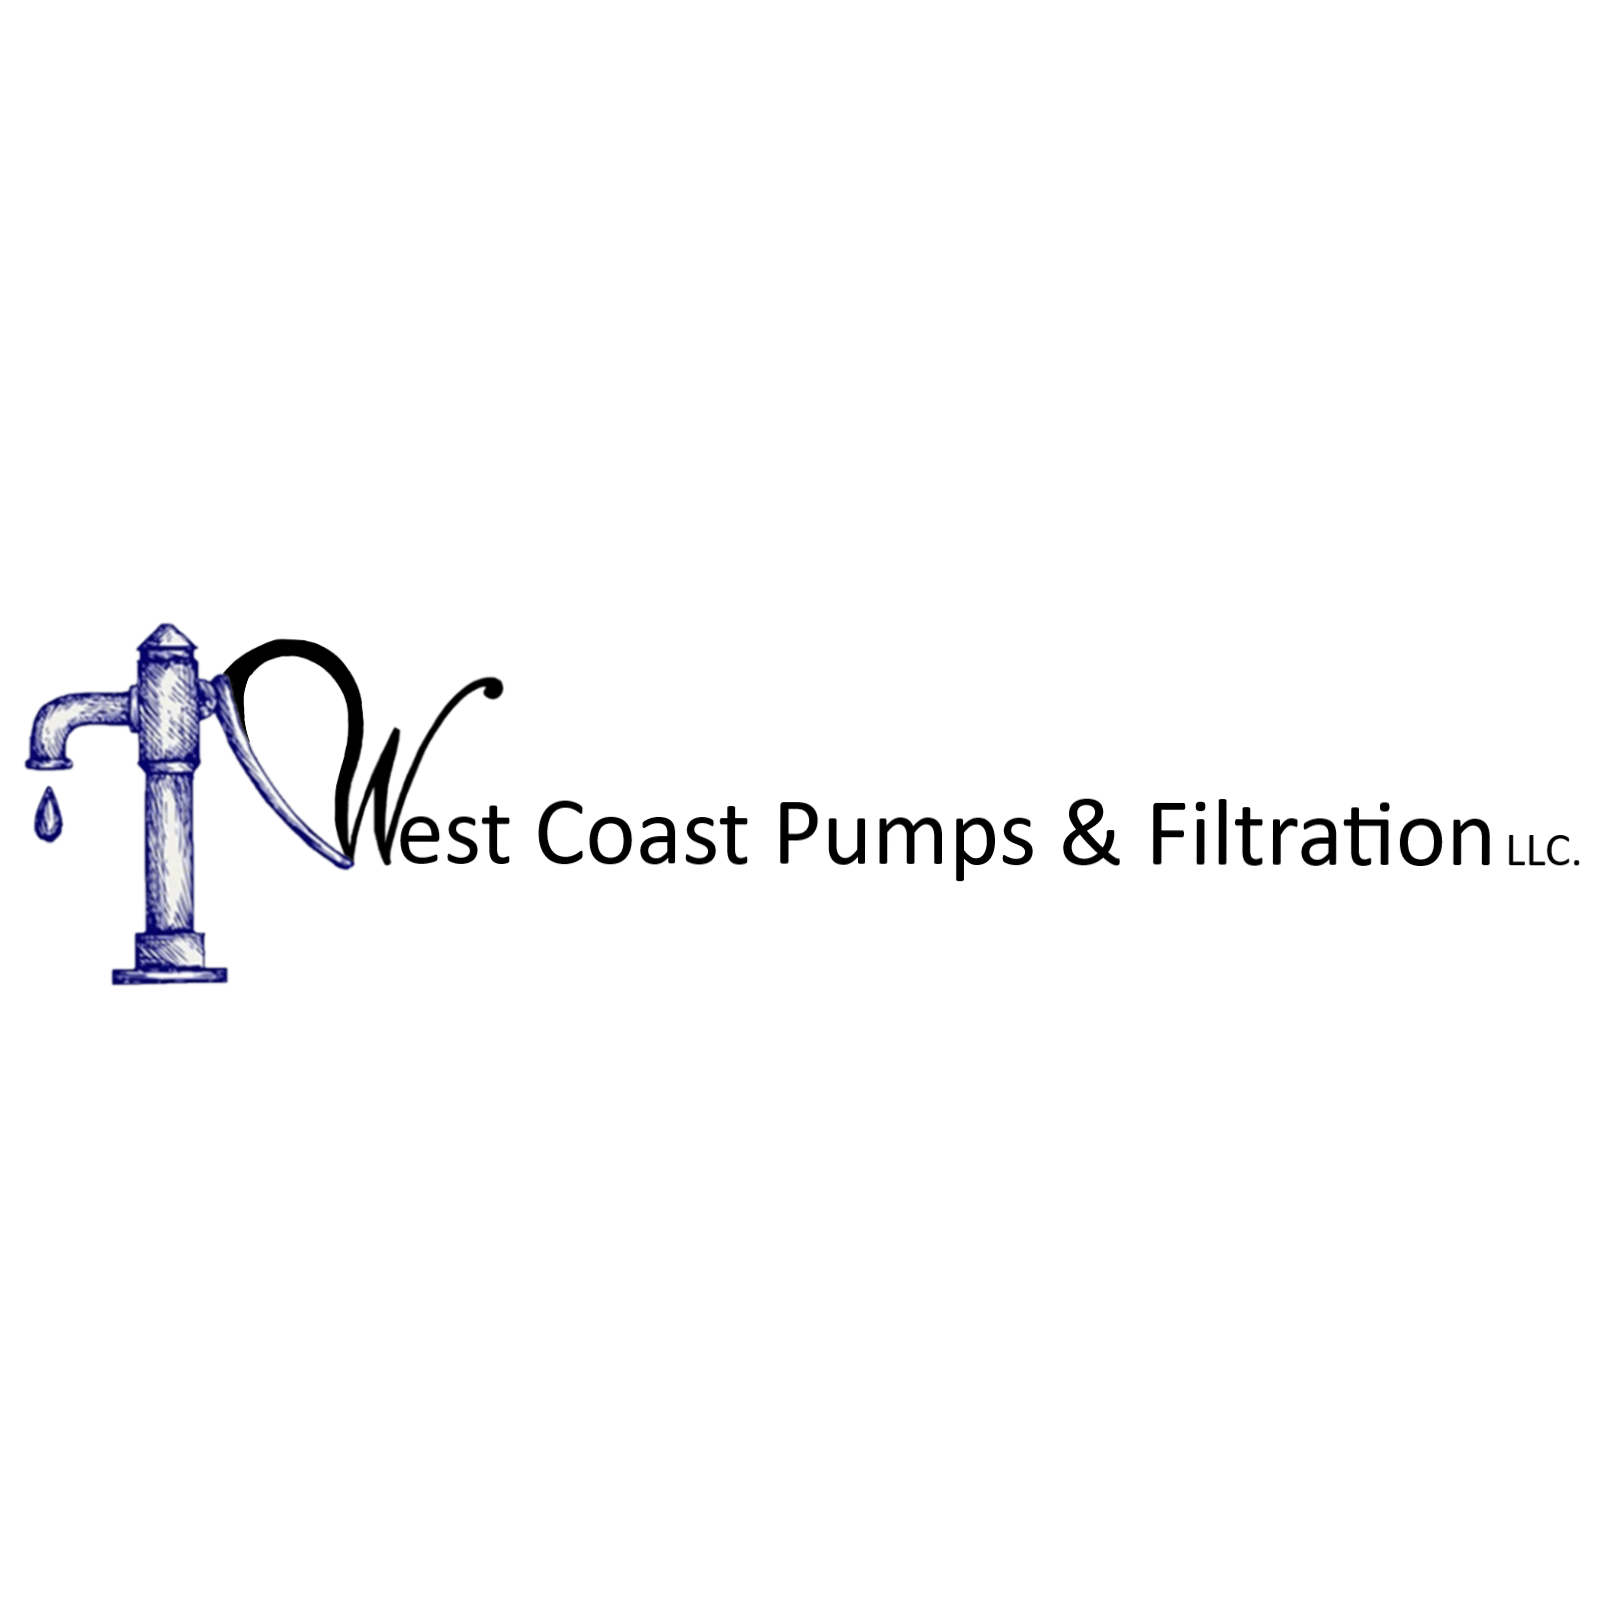 West Coast Pumps & Filtration